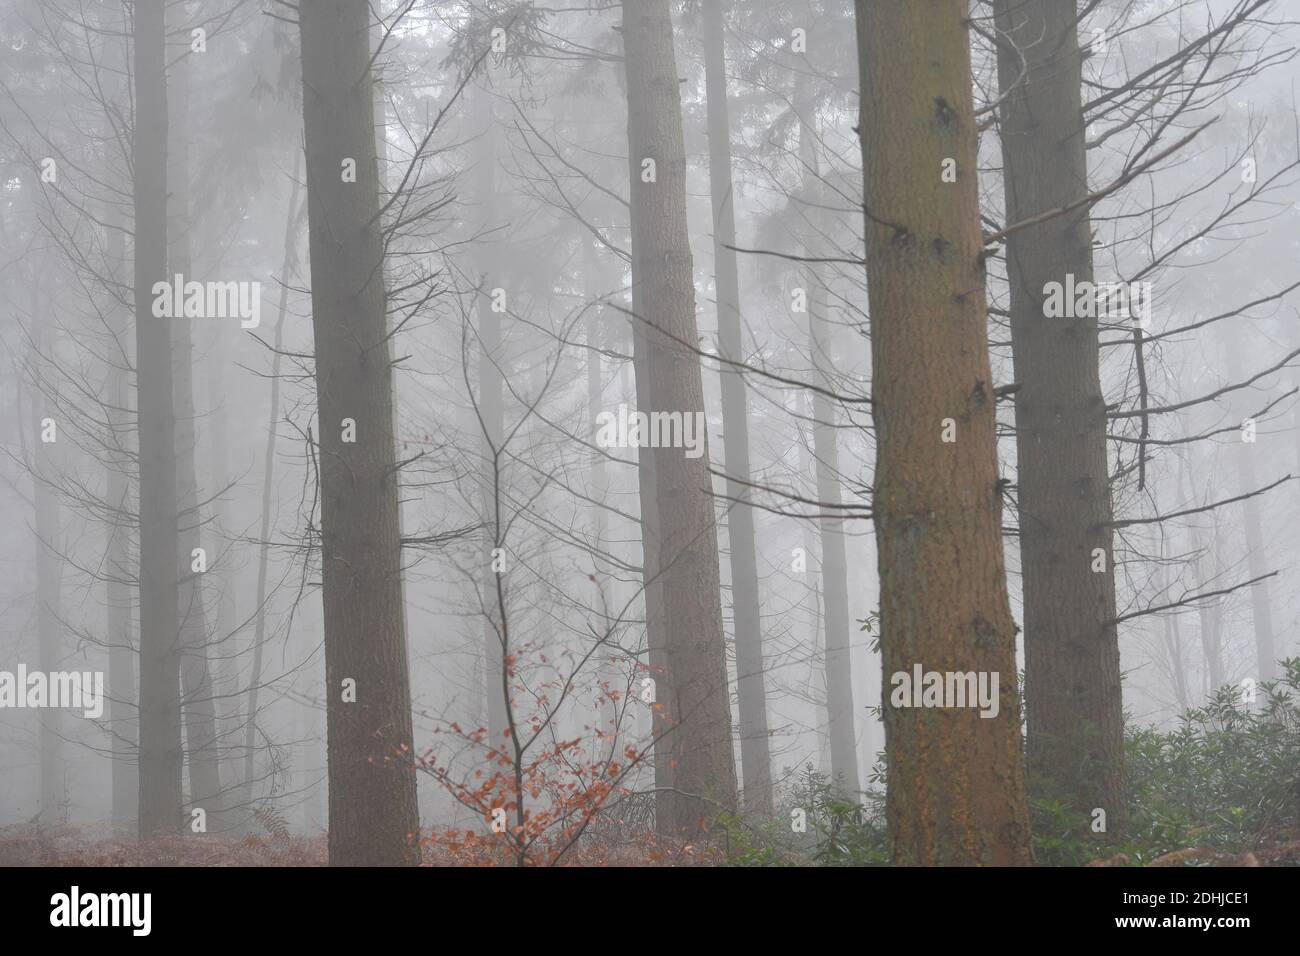 Stock Bilder von Nebel im Wald - North Downs in der Nähe von West Horsley, Surrey.- Dick Focks Common - Forestry Commission. Bild zeigt Nebel, Bäume, Nebel über dieser malerischen Gegend von Surrey. Bild aufgenommen am 7. Dezember 2020 Stockfoto